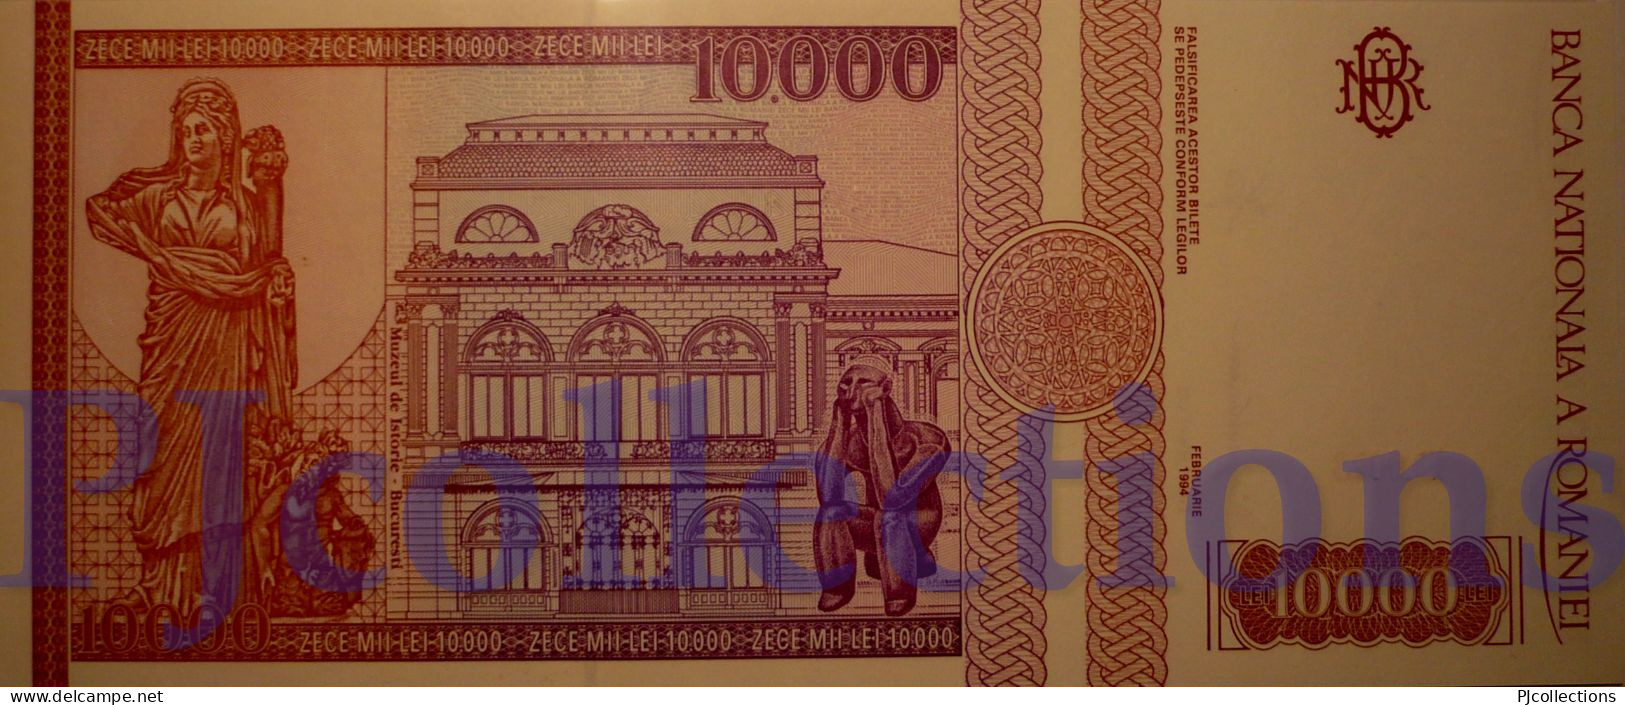 ROMANIA 10000 LEI 1994 PICK 105 UNC - Rumania